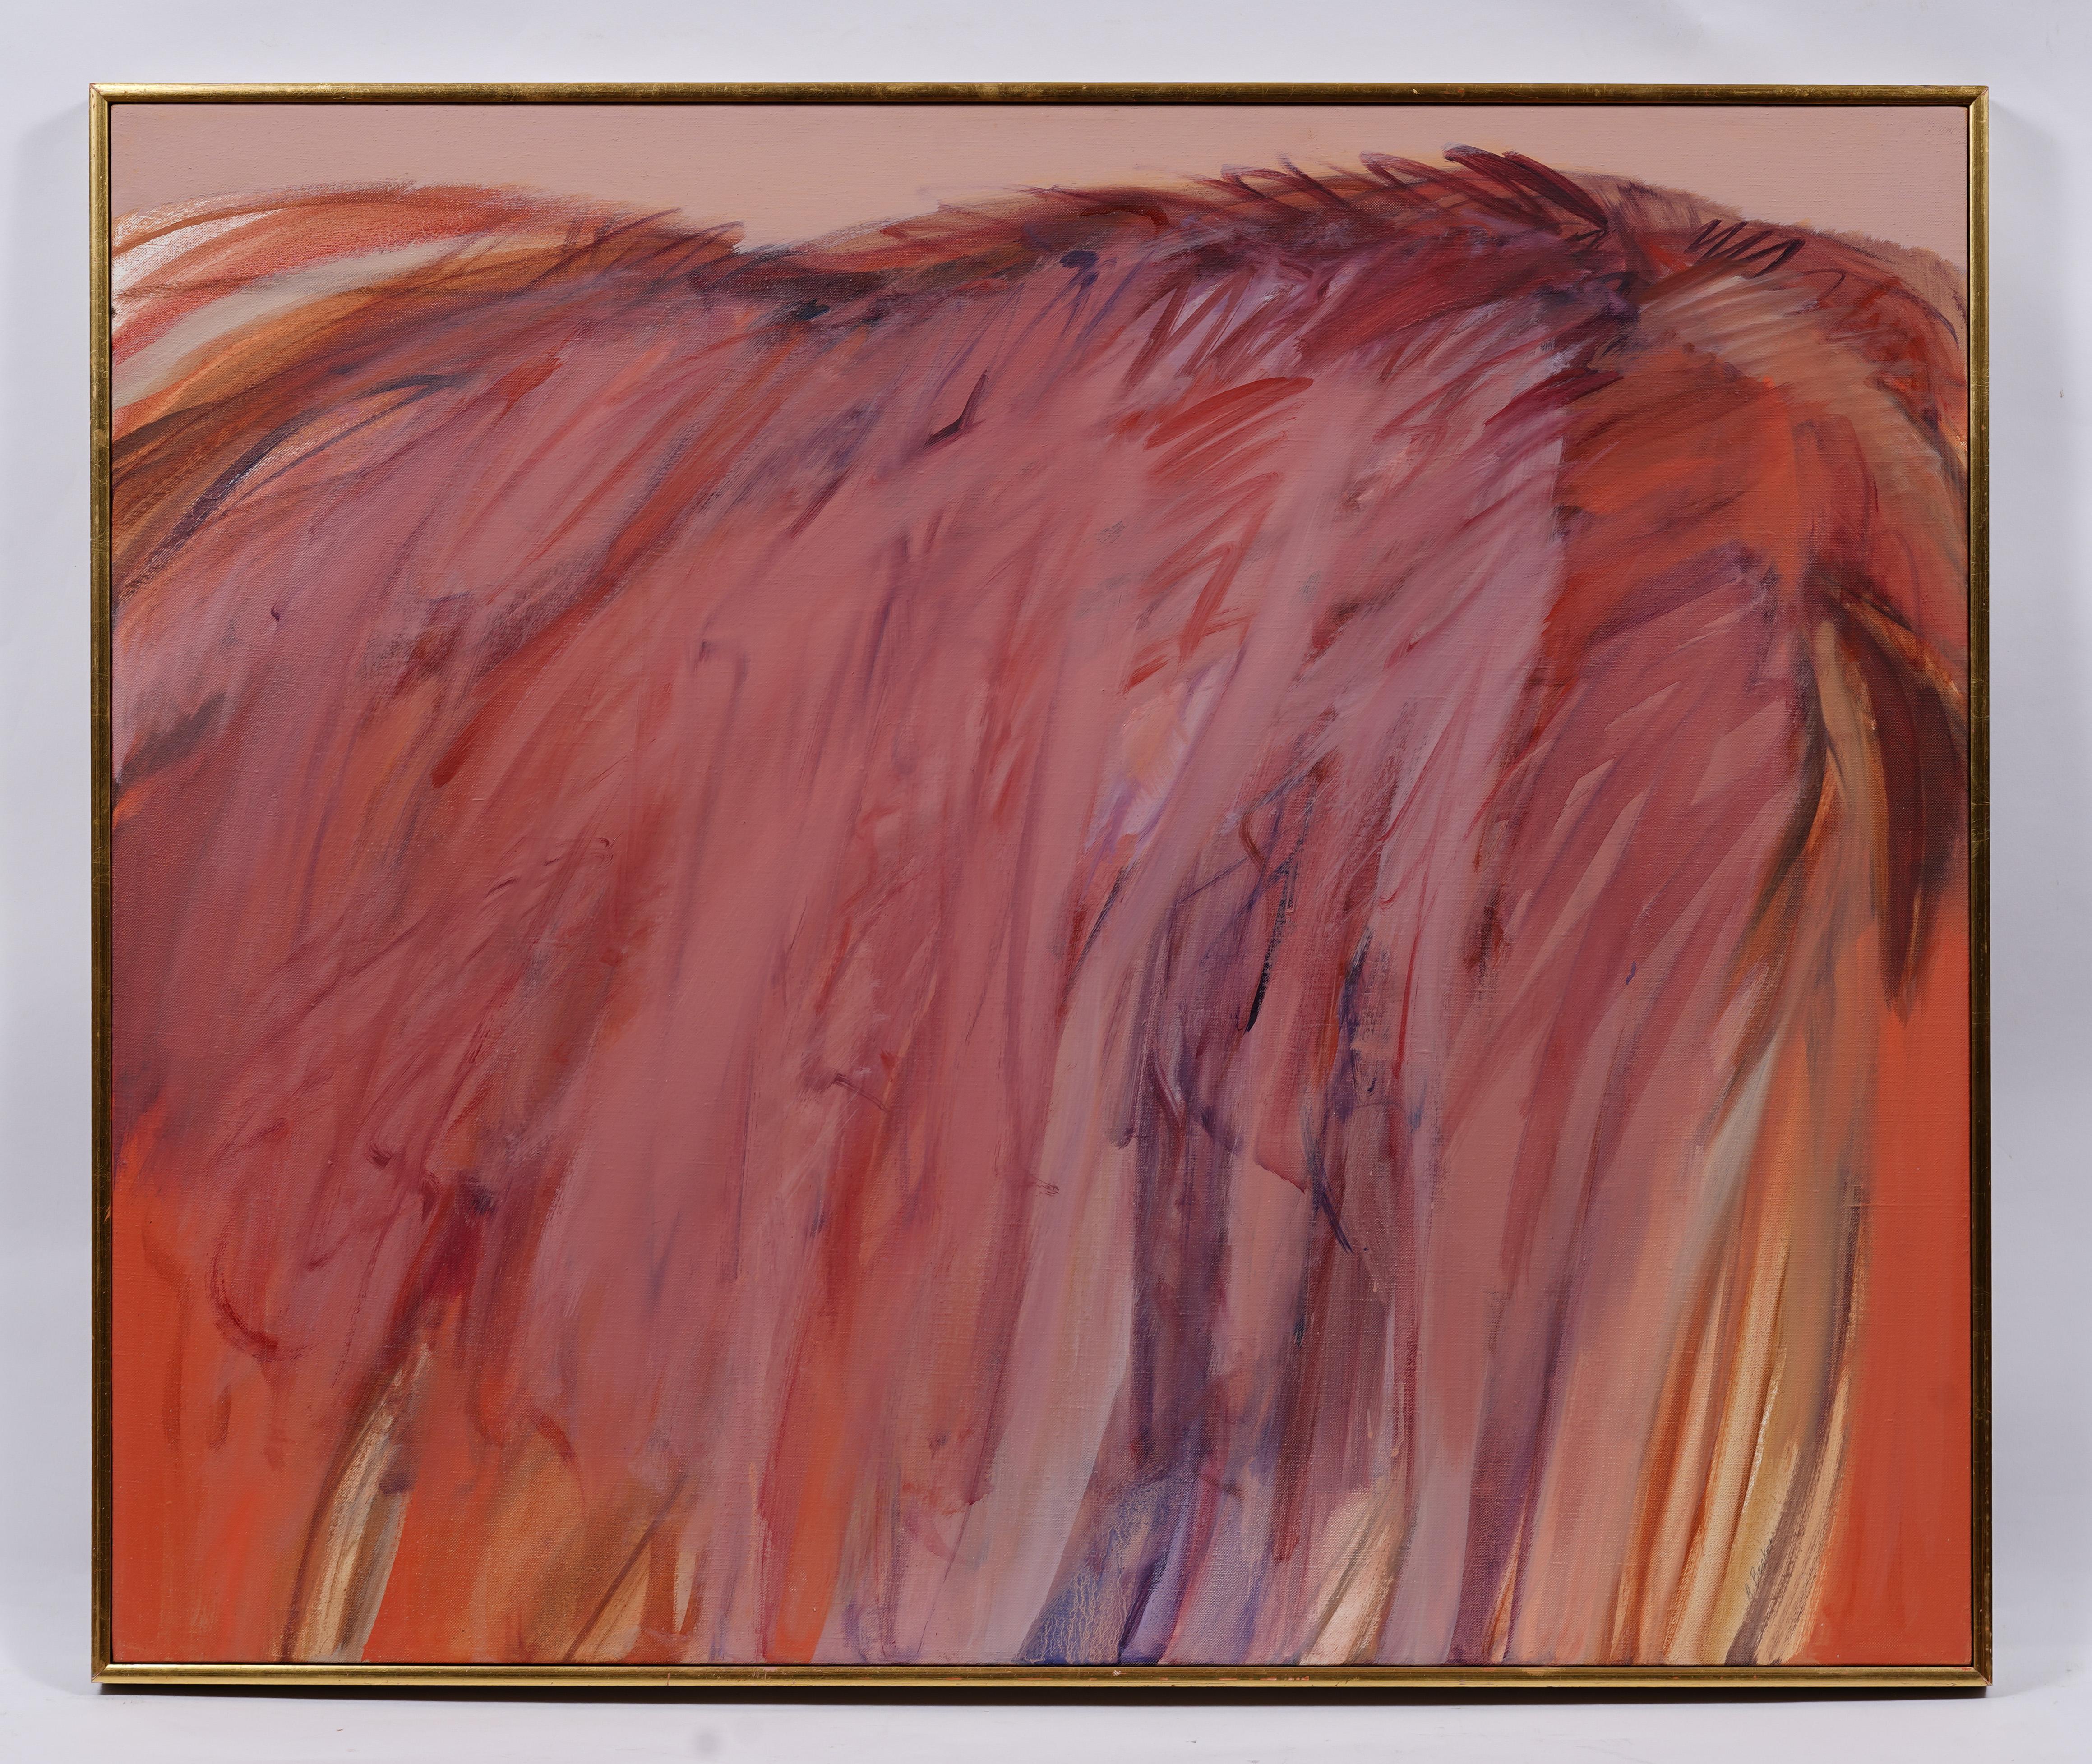 Ancienne peinture expressionniste abstraite américaine moderniste signée de la femme artiste - Abstrait Painting par Adele Becker